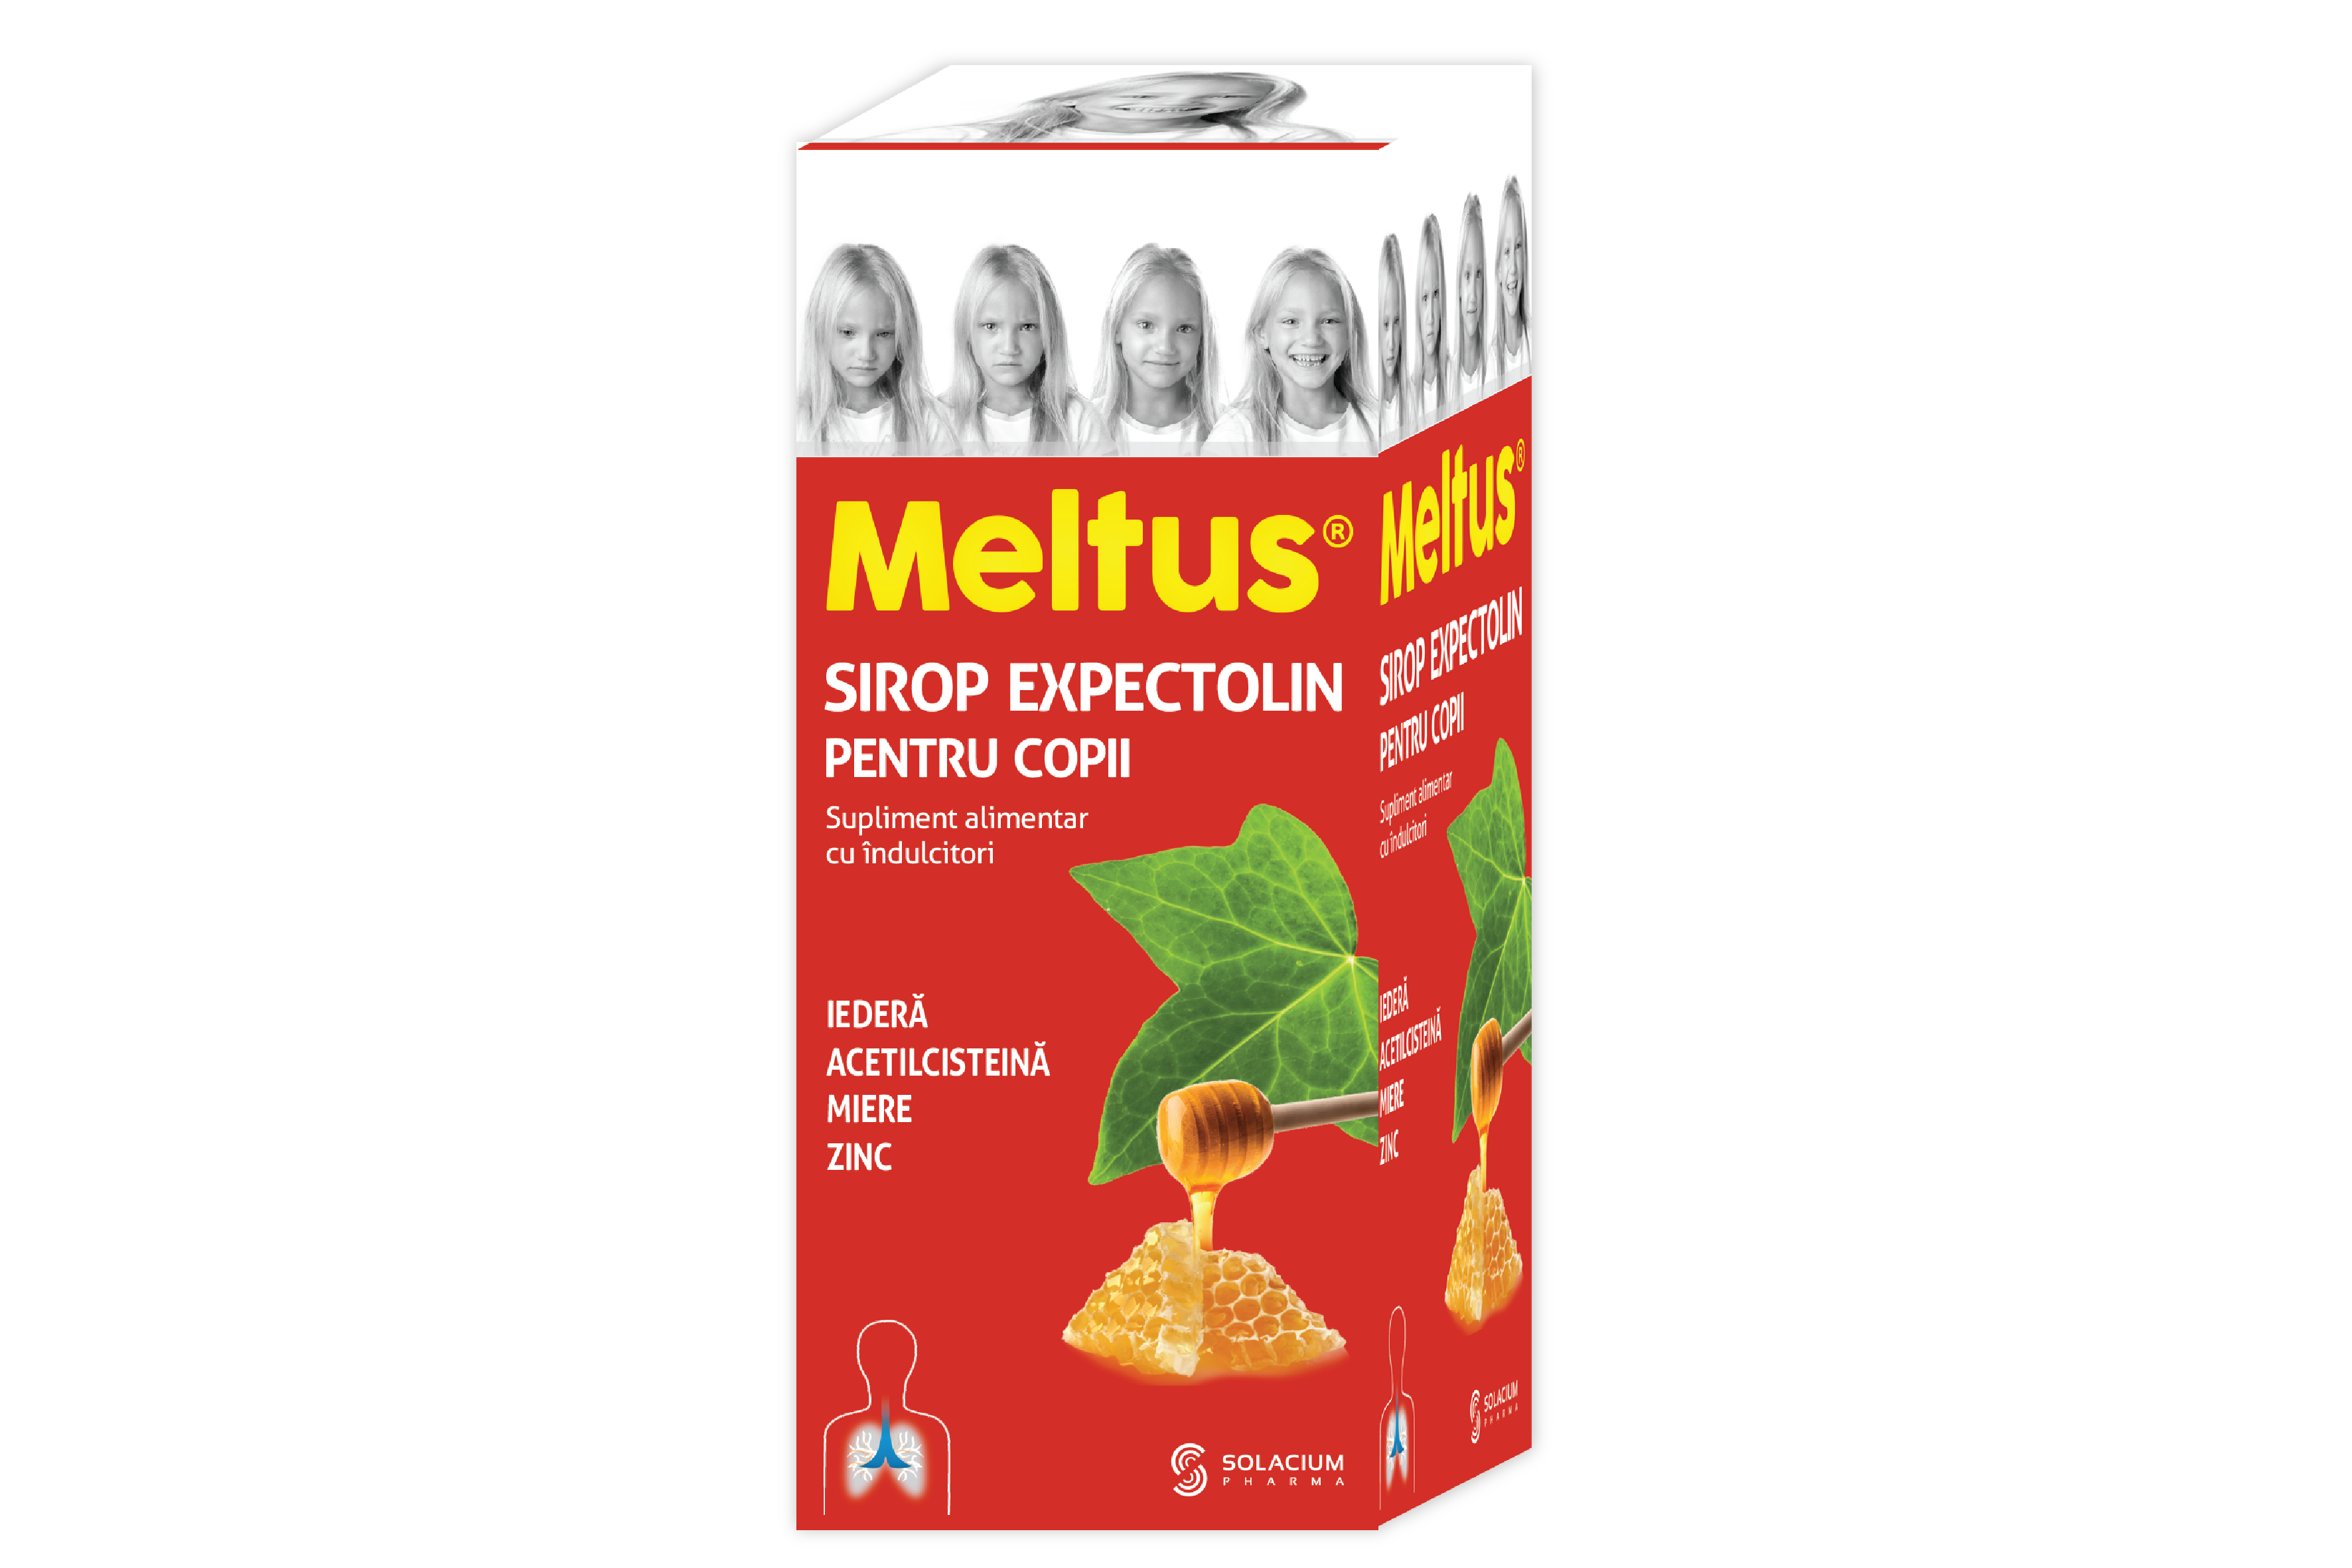 Privilegiat Loc de noapte Cretă  Meltus® Sirop Expectolin pentru Copii – Farmaciile somesan